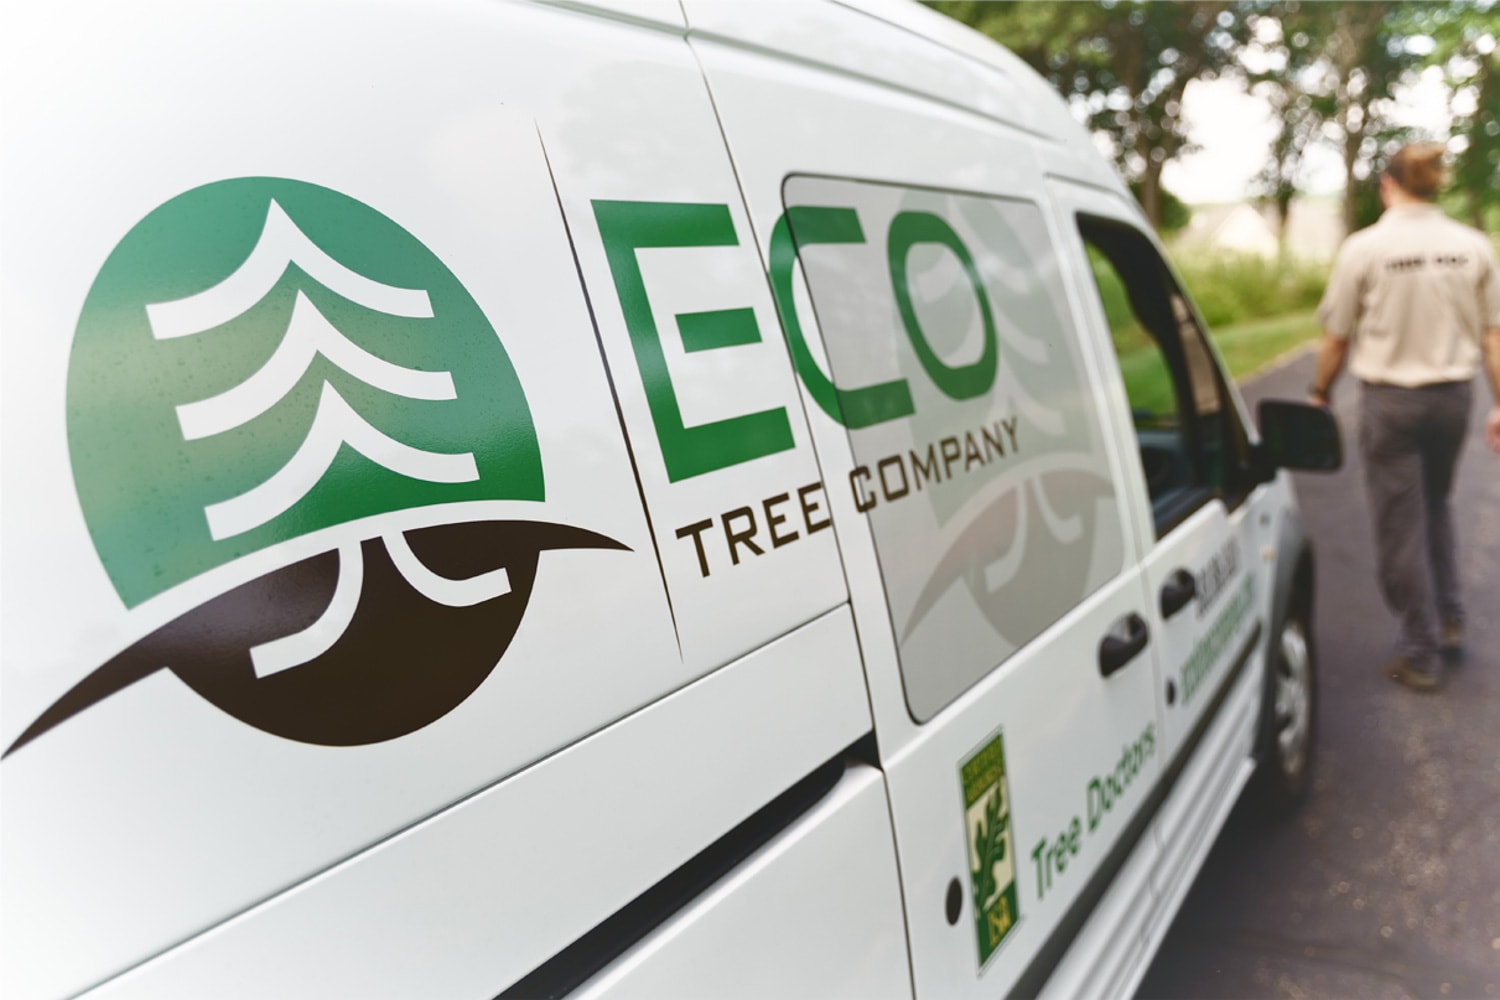 Eco Tree Company truck